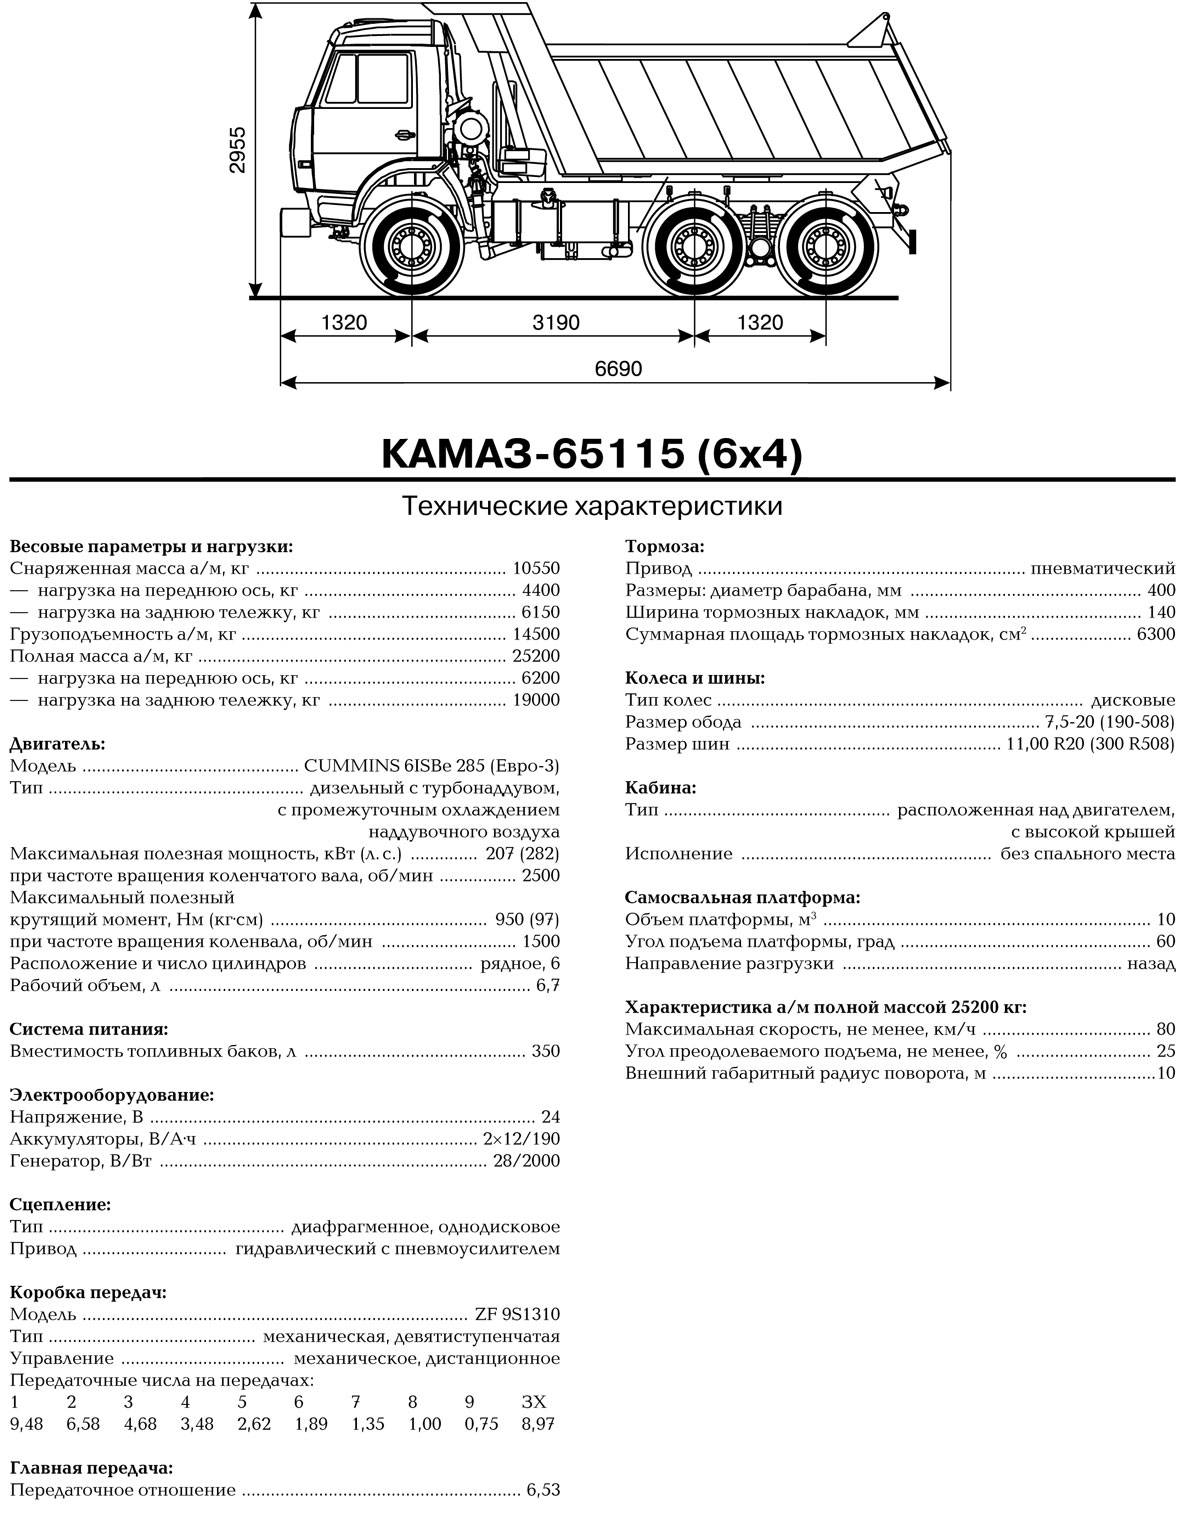 Какой вес камаза. КАМАЗ 65115 самосвал технические характеристики. КАМАЗ 65115 самосвал спецификация. ТТХ КАМАЗ 65115 самосвал. КАМАЗ 65115 технические характеристики технические.